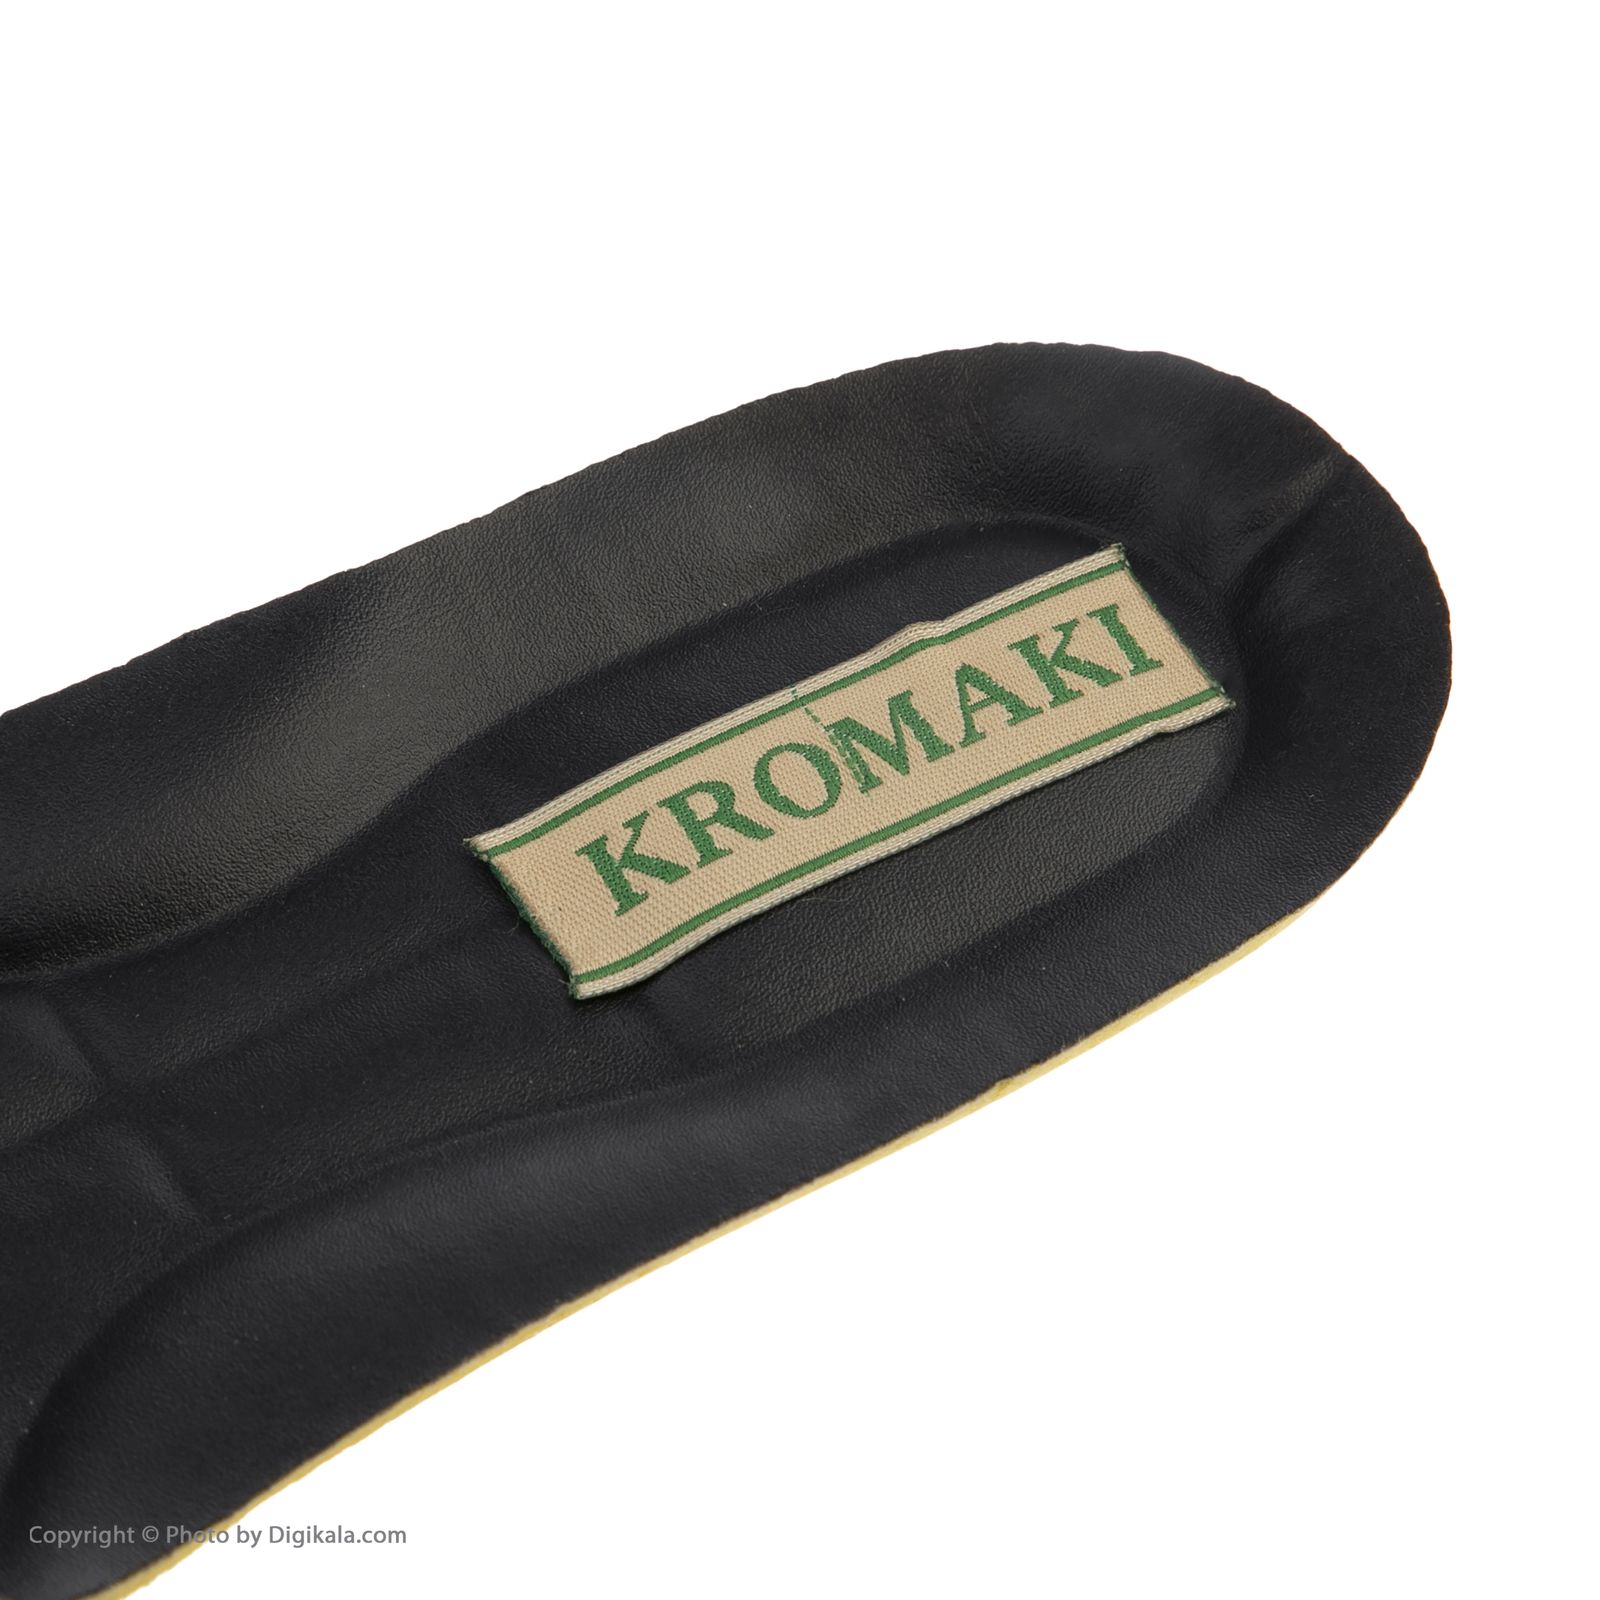 کفی کفش مردانه کروماکی مدل km30001 -  - 4